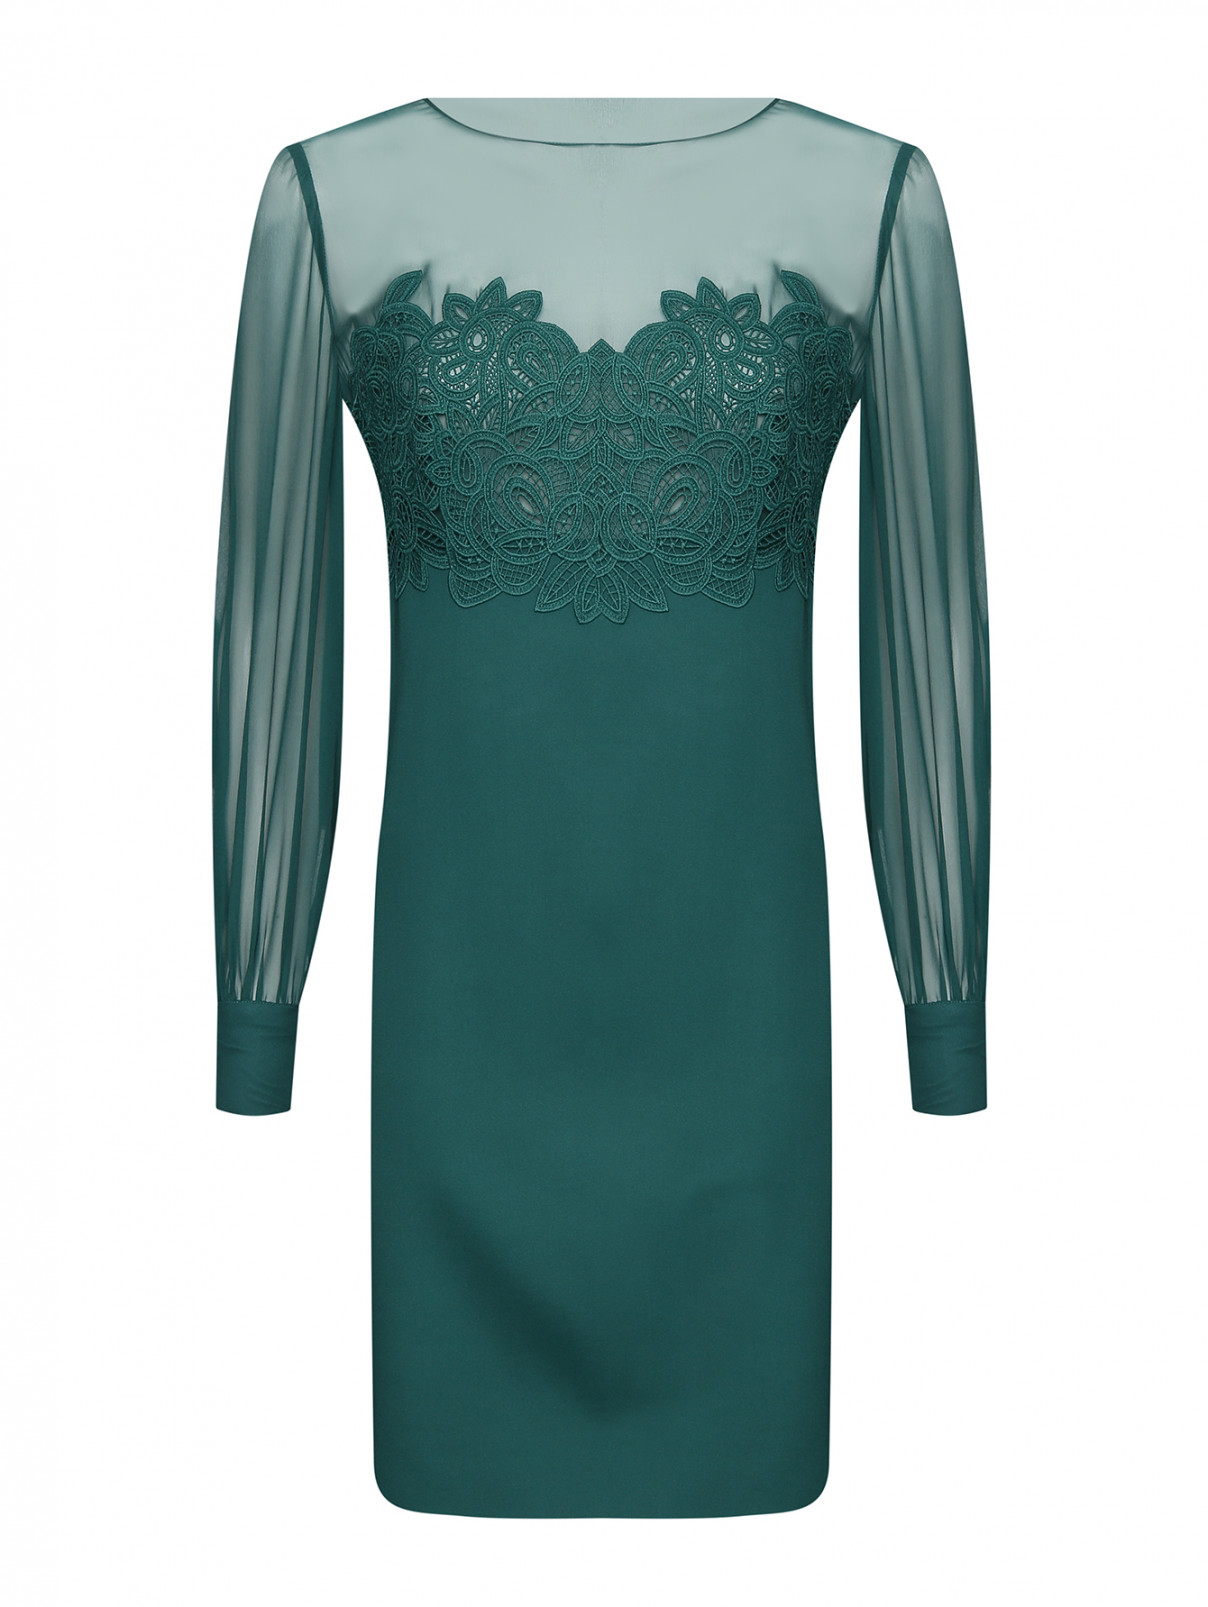 Платье из шелка и вискозы с кружевной отделкой Luisa Spagnoli  –  Общий вид  – Цвет:  Зеленый